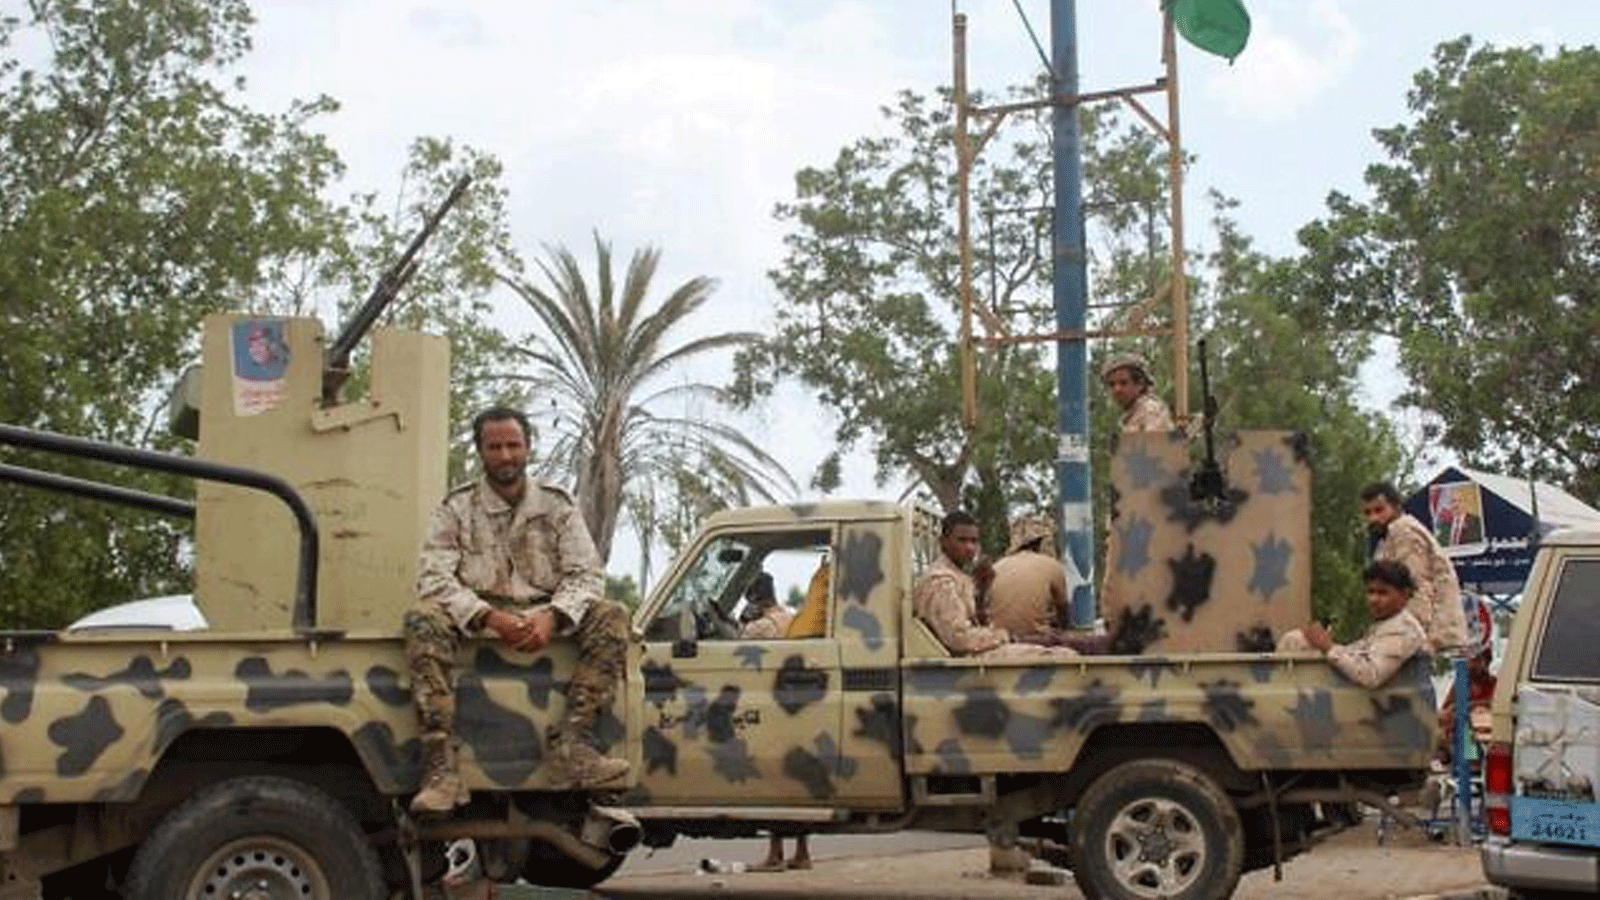 عناصر من قوات الحزام الأمني ​​التي يهيمن عليها الانفصاليون الجنوبيون في اليمن يقفون في حراسة خلال اجتماع للمجلس الانتقالي الجنوبي في مدينة عدن الساحلية الجنوبية الغربية. 13 يناير/ كانون الثاني 2020.